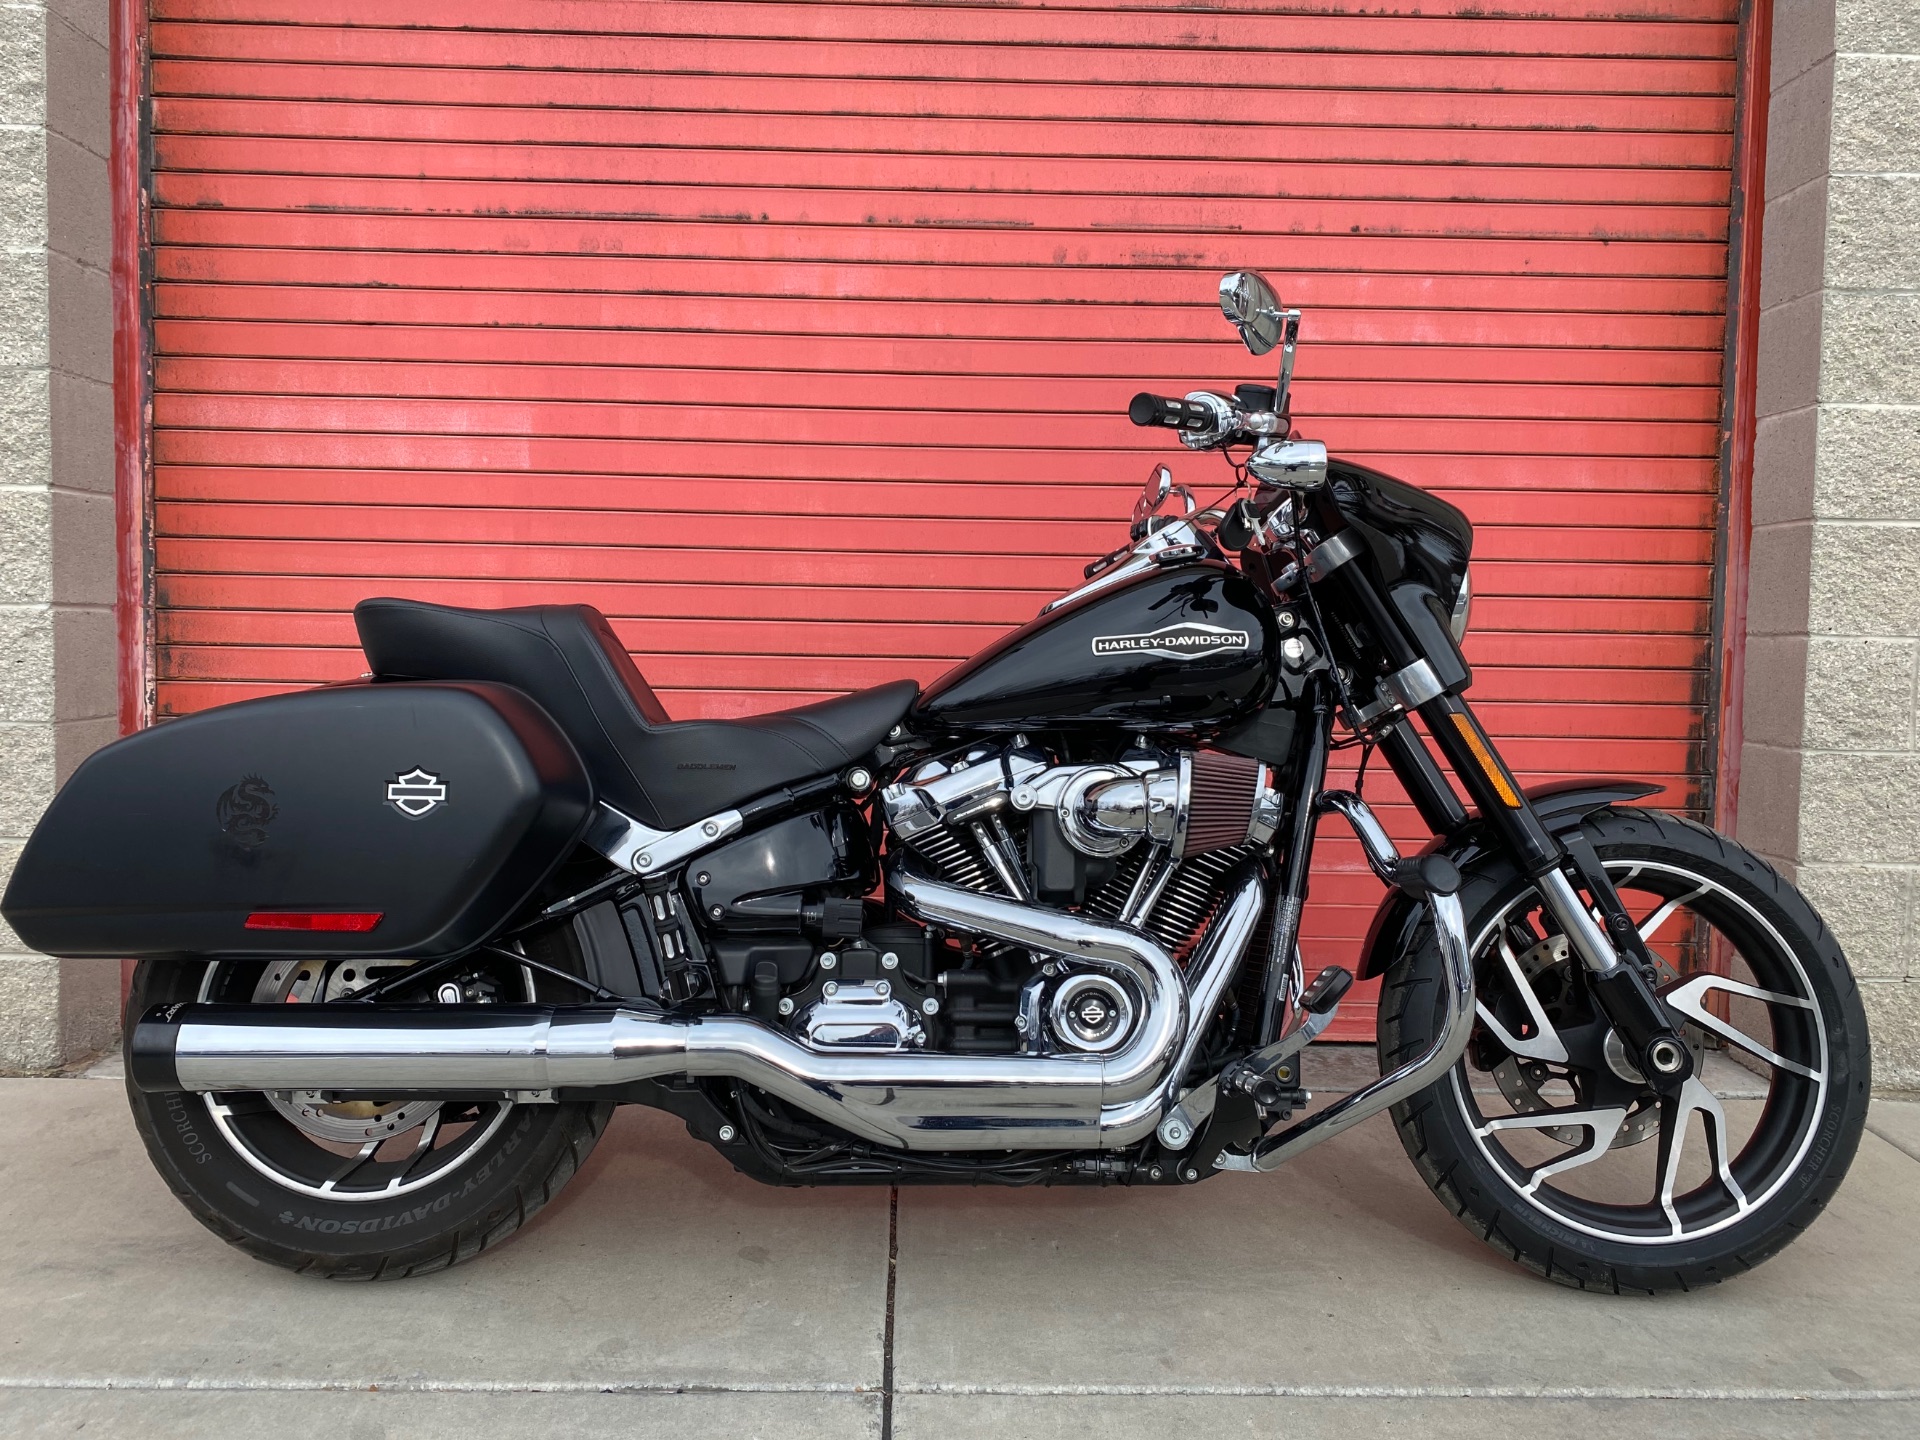 2020 Harley-Davidson Sport Glide® in Sandy, Utah - Photo 1